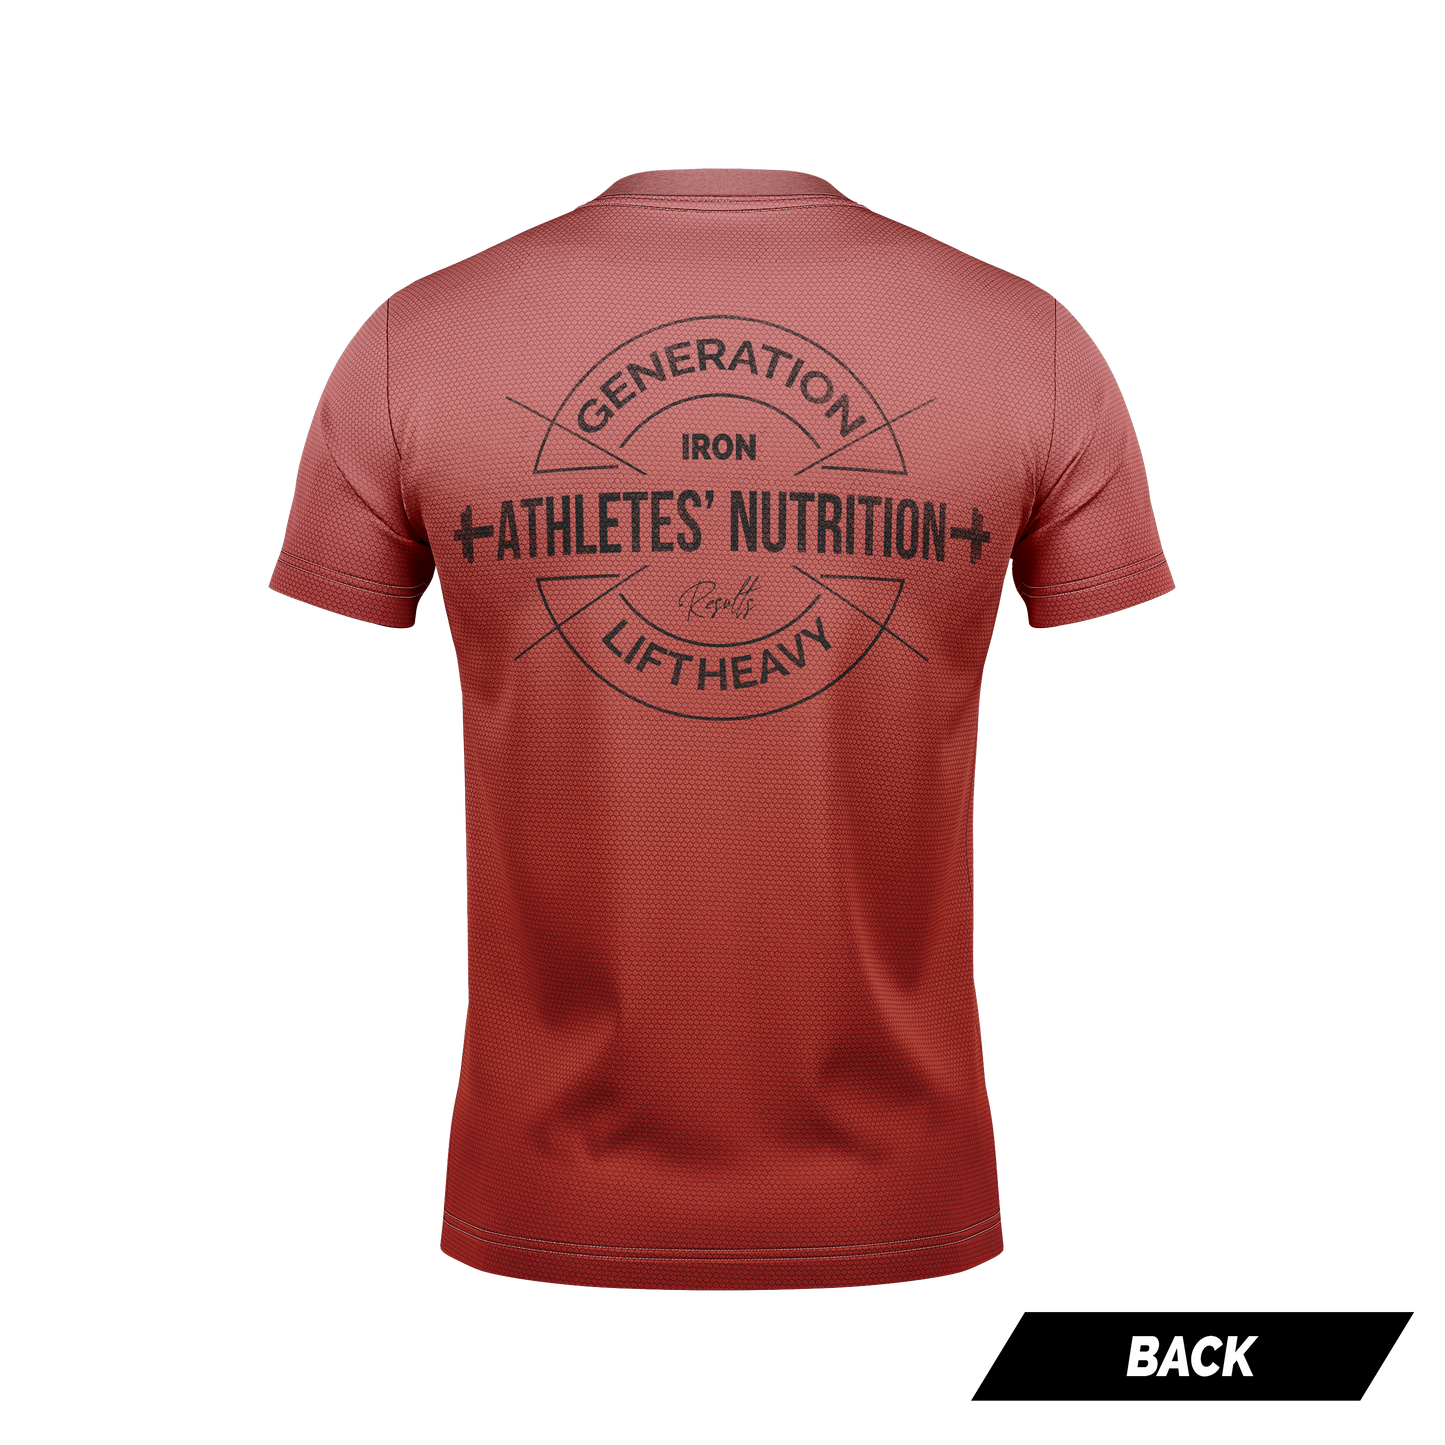 Athletes' Nutrition: Generation Iron T shirt